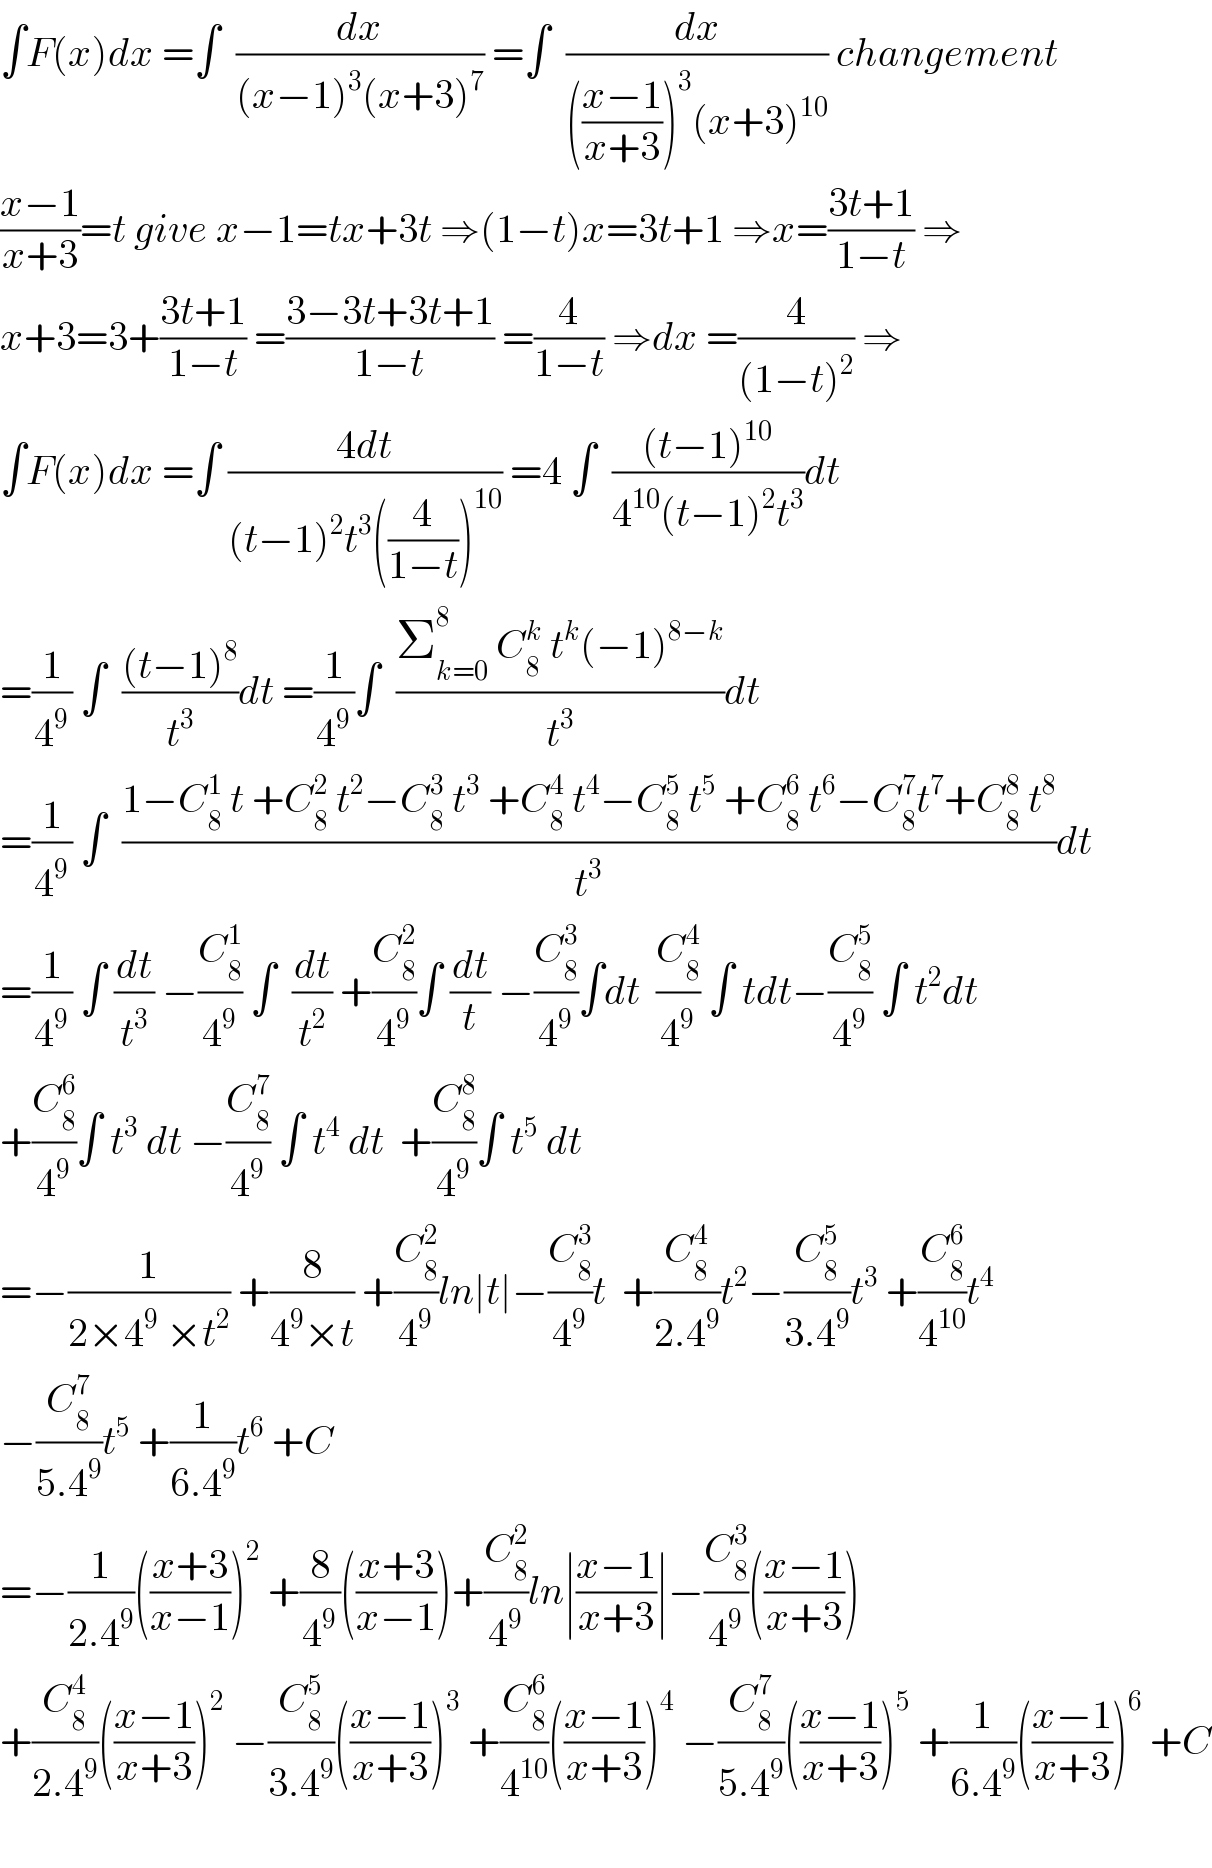 ∫F(x)dx =∫  (dx/((x−1)^3 (x+3)^7 )) =∫  (dx/((((x−1)/(x+3)))^3 (x+3)^(10) )) changement  ((x−1)/(x+3))=t give x−1=tx+3t ⇒(1−t)x=3t+1 ⇒x=((3t+1)/(1−t)) ⇒  x+3=3+((3t+1)/(1−t)) =((3−3t+3t+1)/(1−t)) =(4/(1−t)) ⇒dx =(4/((1−t)^2 )) ⇒  ∫F(x)dx =∫ ((4dt)/((t−1)^2 t^3 ((4/(1−t)))^(10) )) =4 ∫  (((t−1)^(10) )/(4^(10) (t−1)^2 t^3 ))dt  =(1/4^9 ) ∫  (((t−1)^8 )/t^3 )dt =(1/4^9 )∫  ((Σ_(k=0) ^8  C_8 ^k  t^k (−1)^(8−k) )/t^3 )dt  =(1/4^9 ) ∫  ((1−C_8 ^1  t +C_8 ^2  t^2 −C_8 ^3  t^3  +C_8 ^4  t^4 −C_8 ^5  t^5  +C_8 ^6  t^6 −C_8 ^7 t^7 +C_8 ^8  t^8 )/t^3 )dt  =(1/4^9 ) ∫ (dt/t^3 ) −(C_8 ^1 /4^9 ) ∫  (dt/t^2 ) +(C_8 ^2 /4^9 )∫ (dt/t) −(C_8 ^3 /4^9 )∫dt  (C_8 ^4 /4^9 ) ∫ tdt−(C_8 ^5 /4^9 ) ∫ t^2 dt  +(C_8 ^6 /4^9 )∫ t^3  dt −(C_8 ^7 /4^9 ) ∫ t^4  dt  +(C_8 ^8 /4^9 )∫ t^5  dt  =−(1/(2×4^9  ×t^2 )) +(8/(4^9 ×t)) +(C_8 ^2 /4^9 )ln∣t∣−(C_8 ^3 /4^9 )t  +(C_8 ^4 /(2.4^9 ))t^2 −(C_8 ^5 /(3.4^9 ))t^3  +(C_8 ^6 /4^(10) )t^4   −(C_8 ^7 /(5.4^9 ))t^5  +(1/(6.4^9 ))t^6  +C  =−(1/(2.4^9 ))(((x+3)/(x−1)))^2  +(8/4^9 )(((x+3)/(x−1)))+(C_8 ^2 /4^9 )ln∣((x−1)/(x+3))∣−(C_8 ^3 /4^9 )(((x−1)/(x+3)))  +(C_8 ^4 /(2.4^9 ))(((x−1)/(x+3)))^2  −(C_8 ^5 /(3.4^9 ))(((x−1)/(x+3)))^3  +(C_8 ^6 /4^(10) )(((x−1)/(x+3)))^4  −(C_8 ^7 /(5.4^9 ))(((x−1)/(x+3)))^5  +(1/(6.4^9 ))(((x−1)/(x+3)))^6  +C    